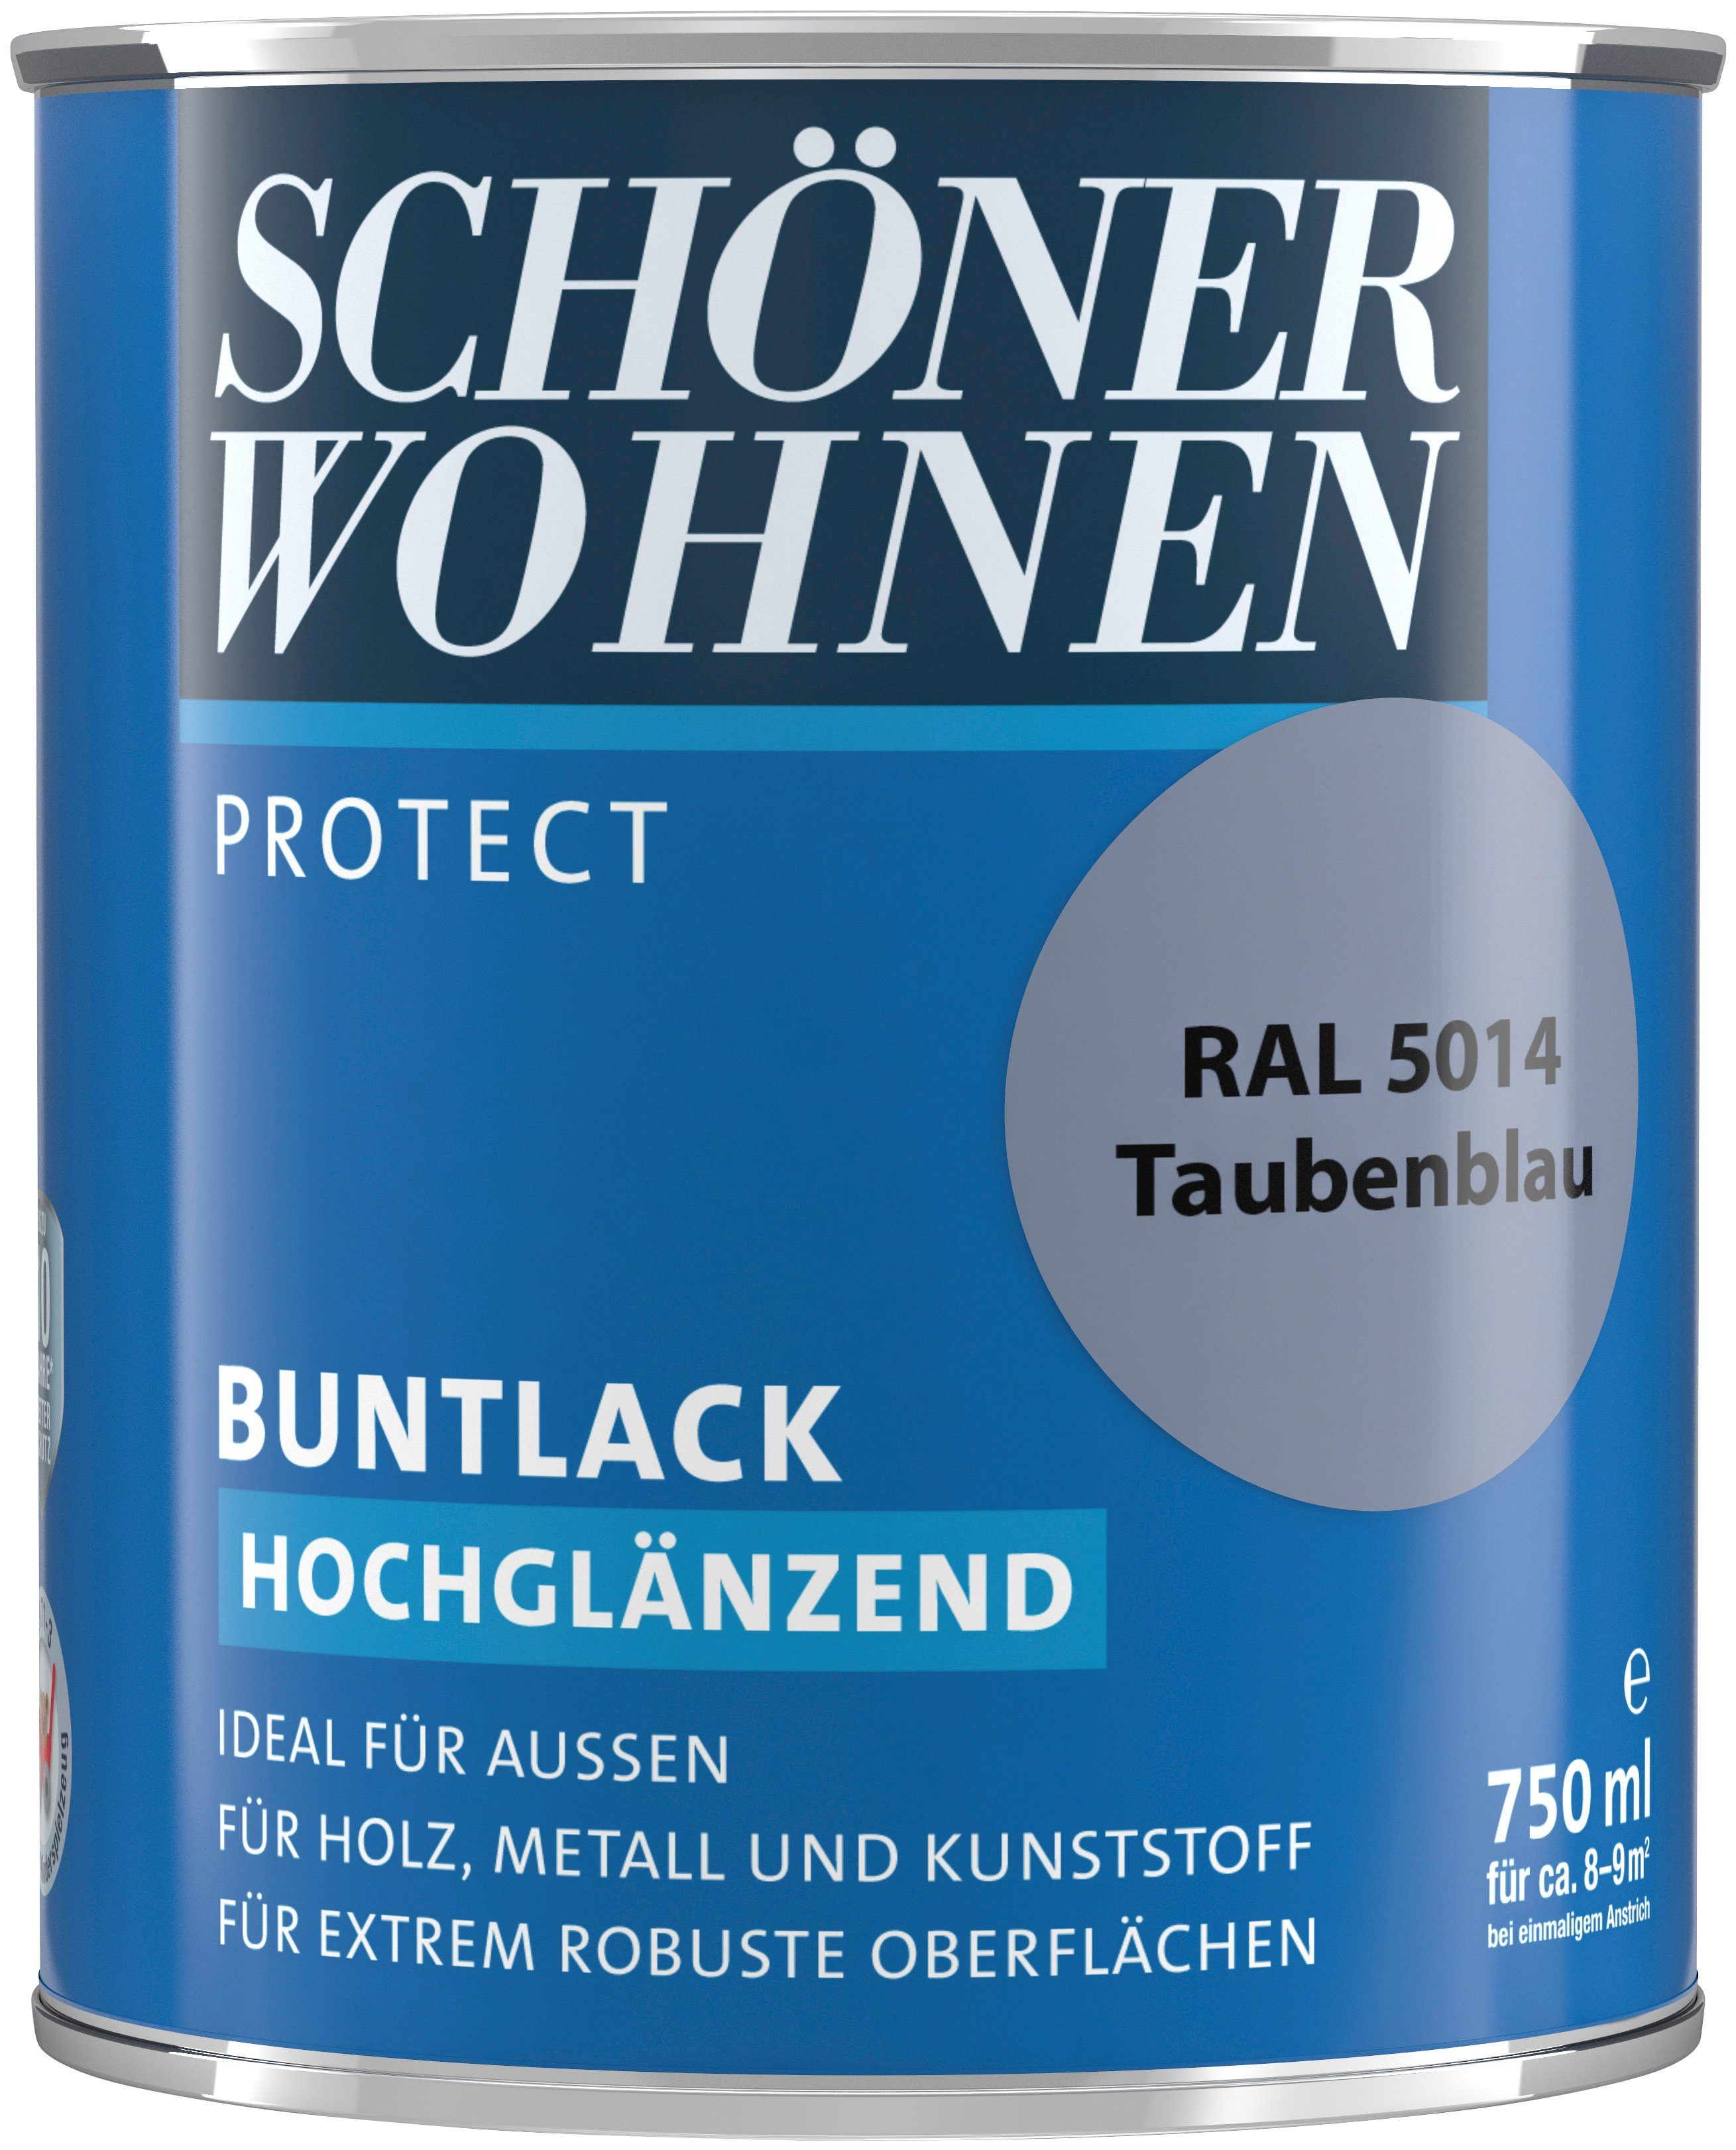 Protect 750 ml, taubenblau Buntlack, für Lack 5014, RAL FARBE außen ideal hochglänzend, SCHÖNER WOHNEN